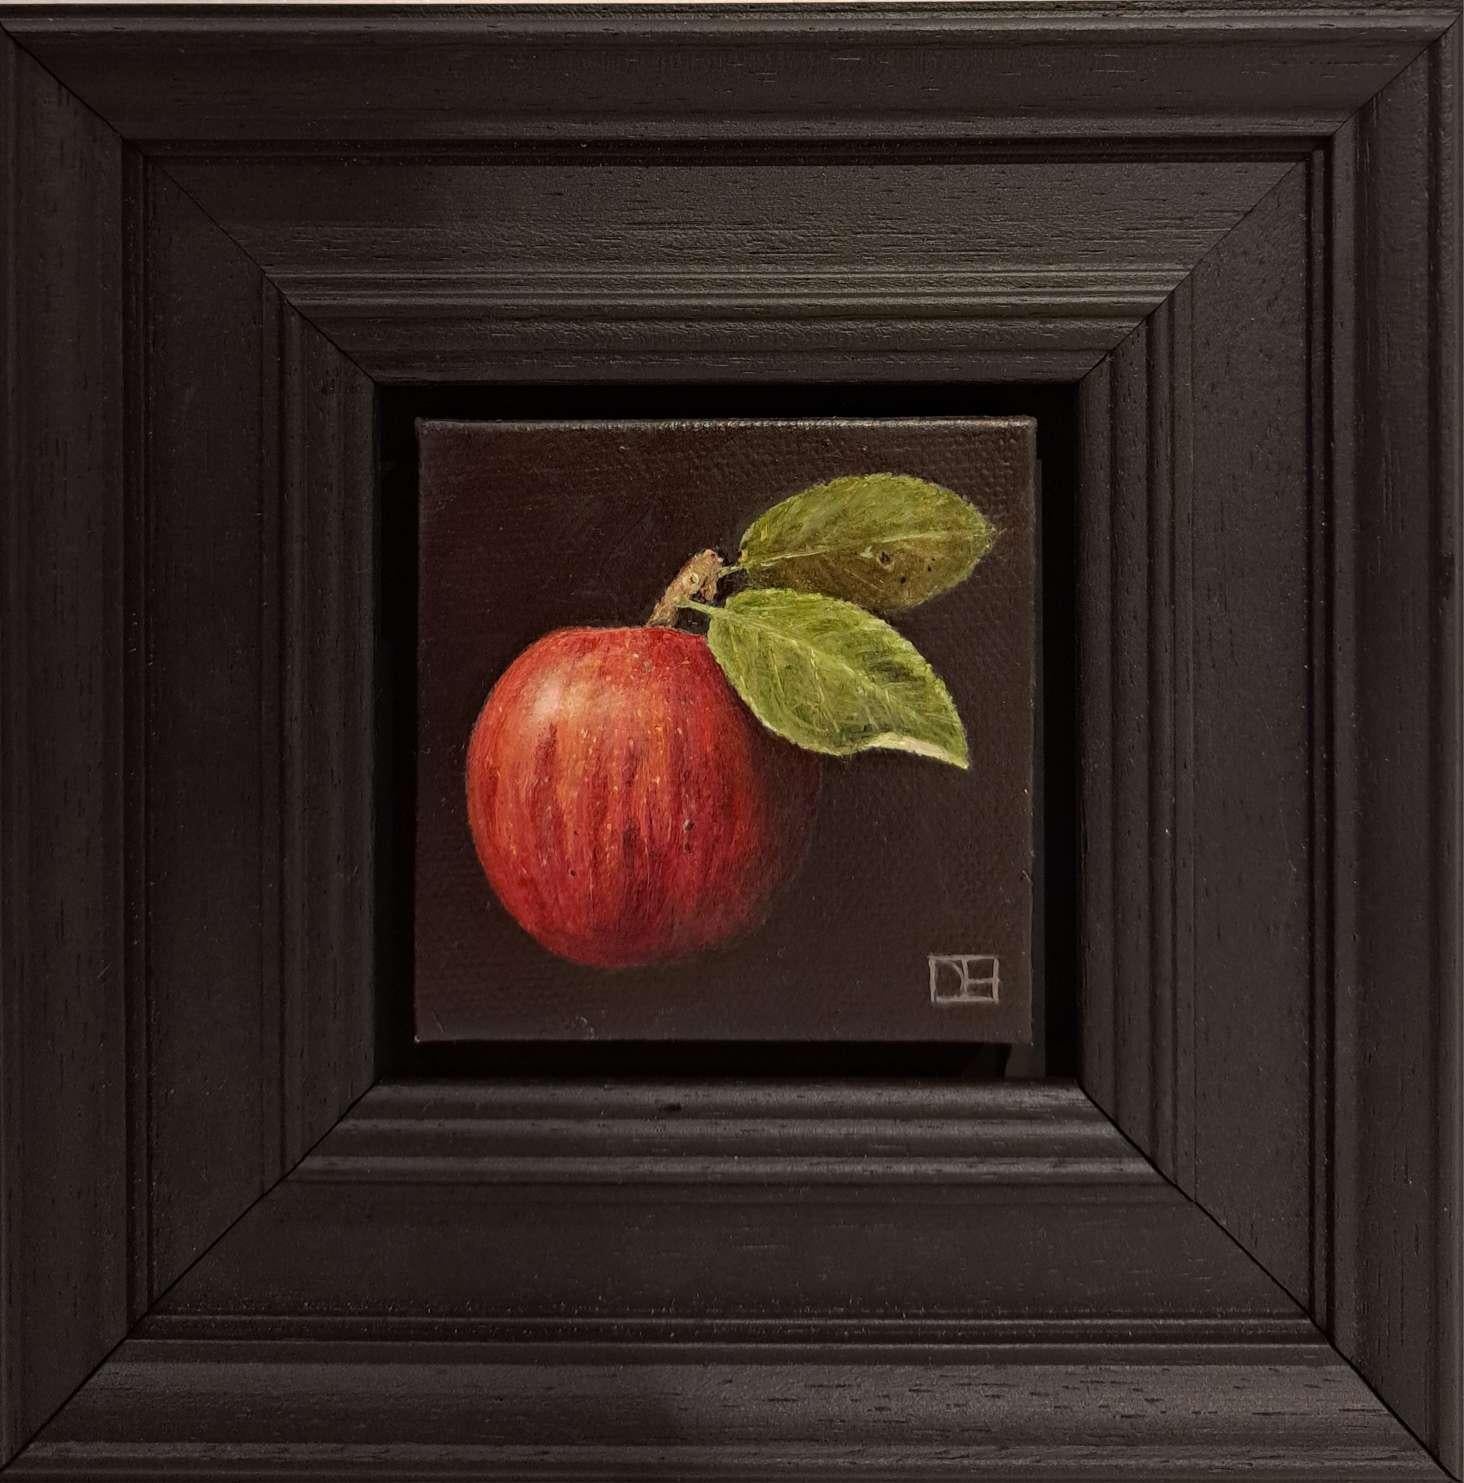 Tasche Gala Apfel [2023]

Pocket Tangerine ist ein Original-Ölgemälde von Dani Humberstone als Teil ihrer Pocket Painting-Serie, die realistische Ölgemälde in kleinem Maßstab mit einer Anspielung auf die barocke Stilllebenmalerei umfasst. Die